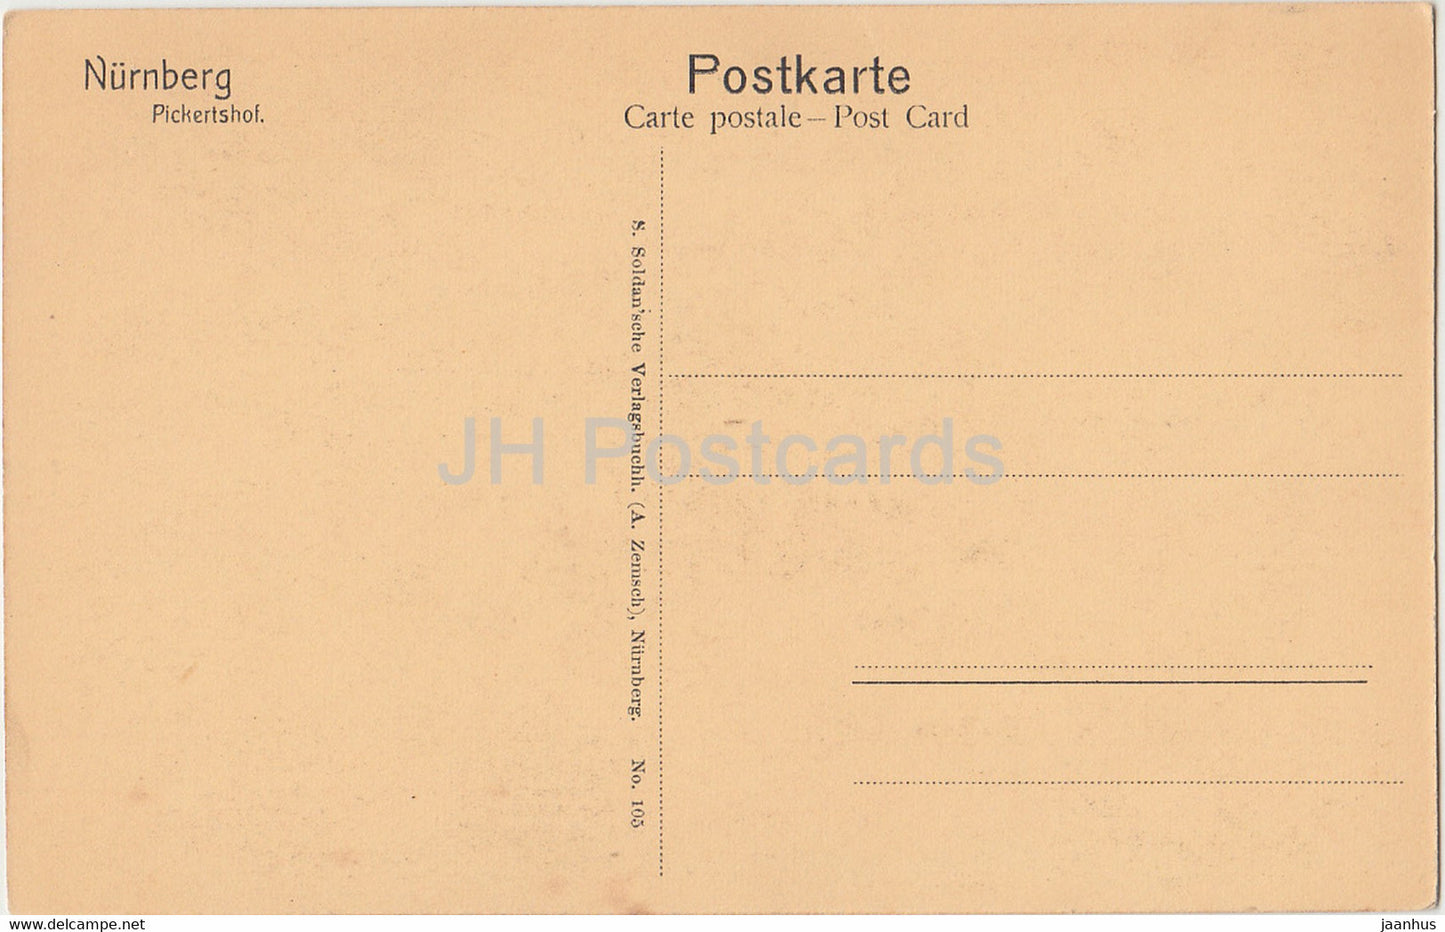 Nurnberg - Pickertshof - 1 - old postcard - Germany - unused